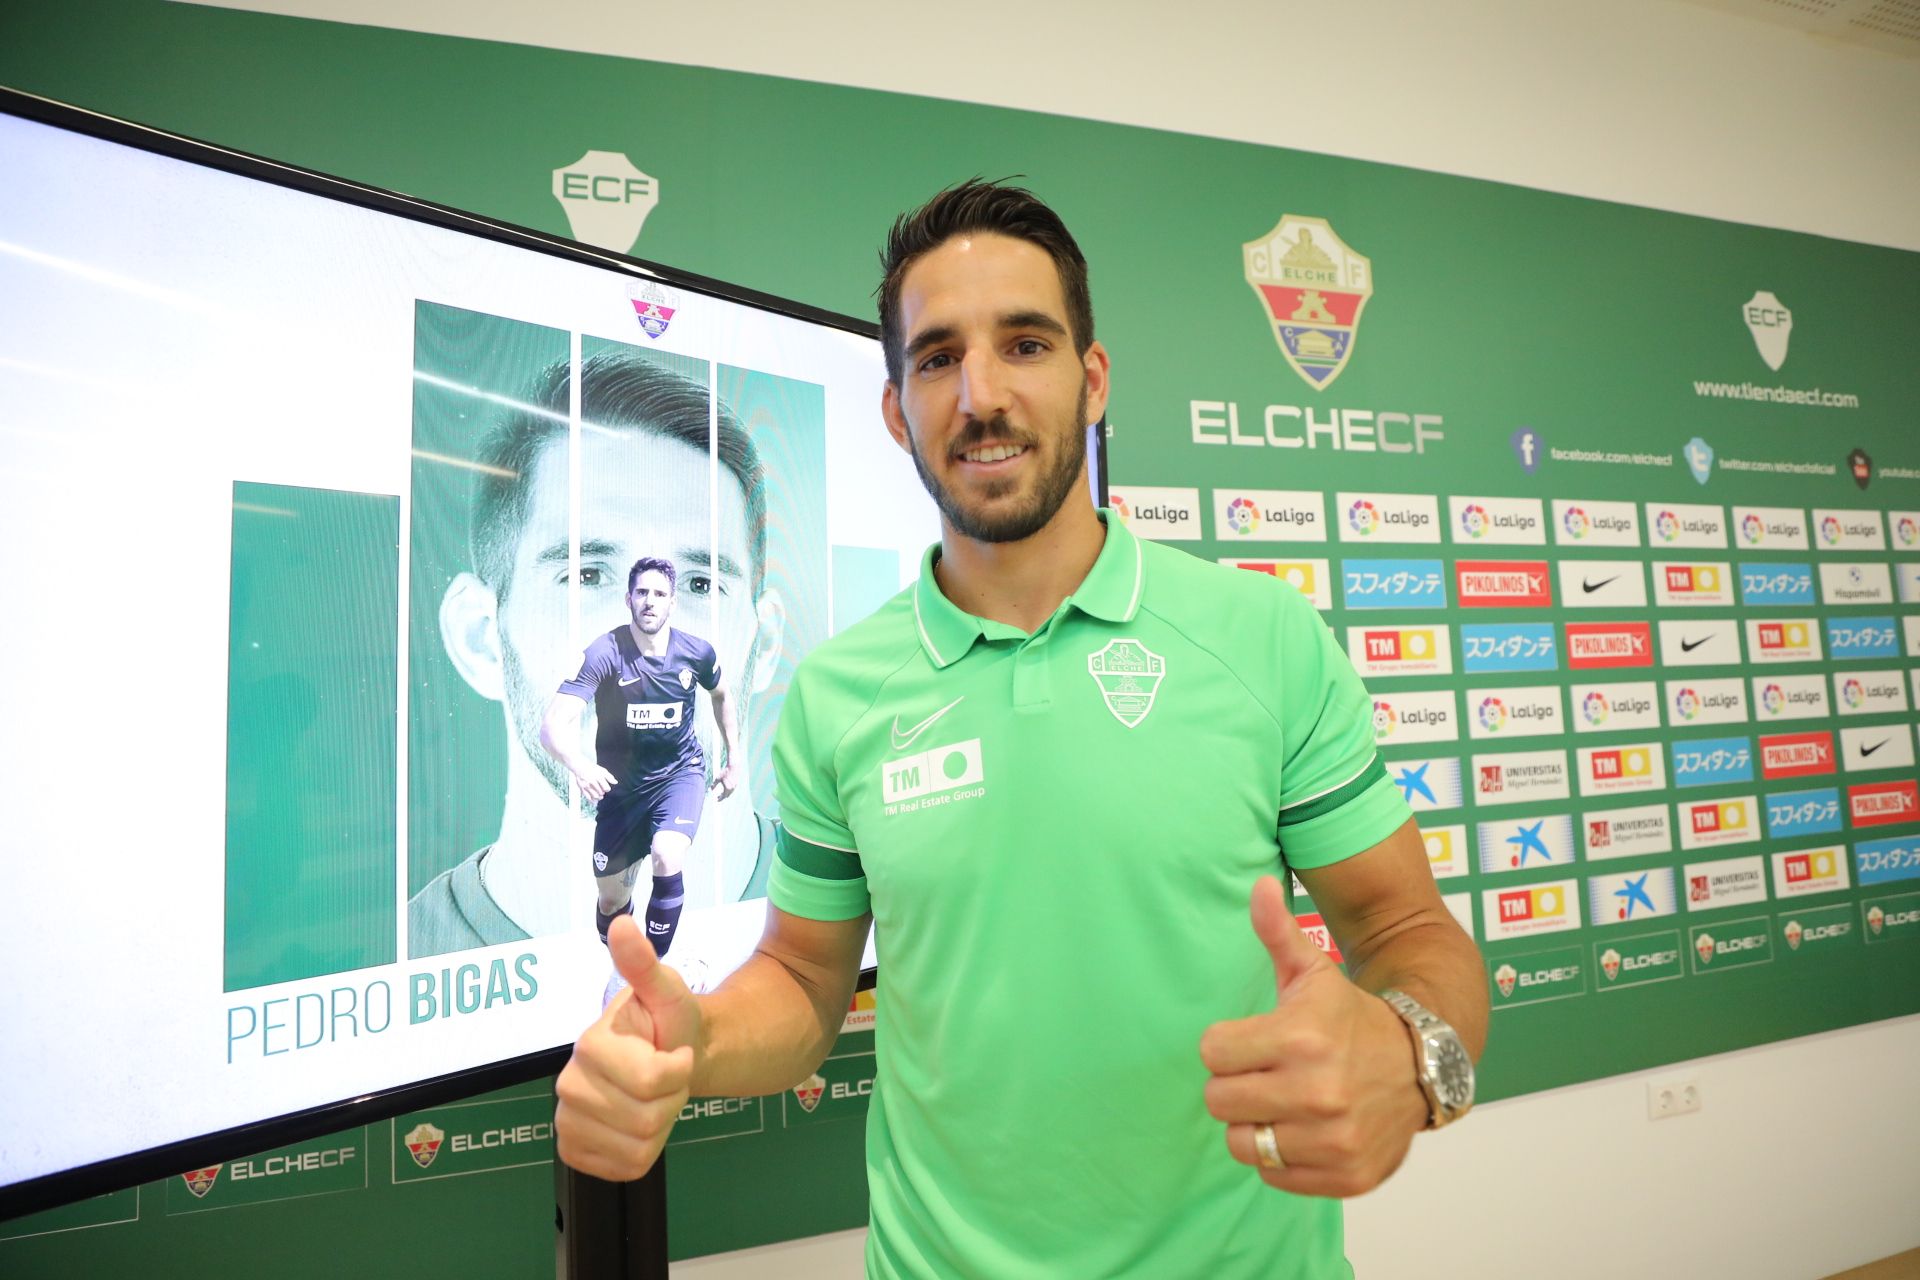 Pedro Bigas nuevo jugador Elche CF